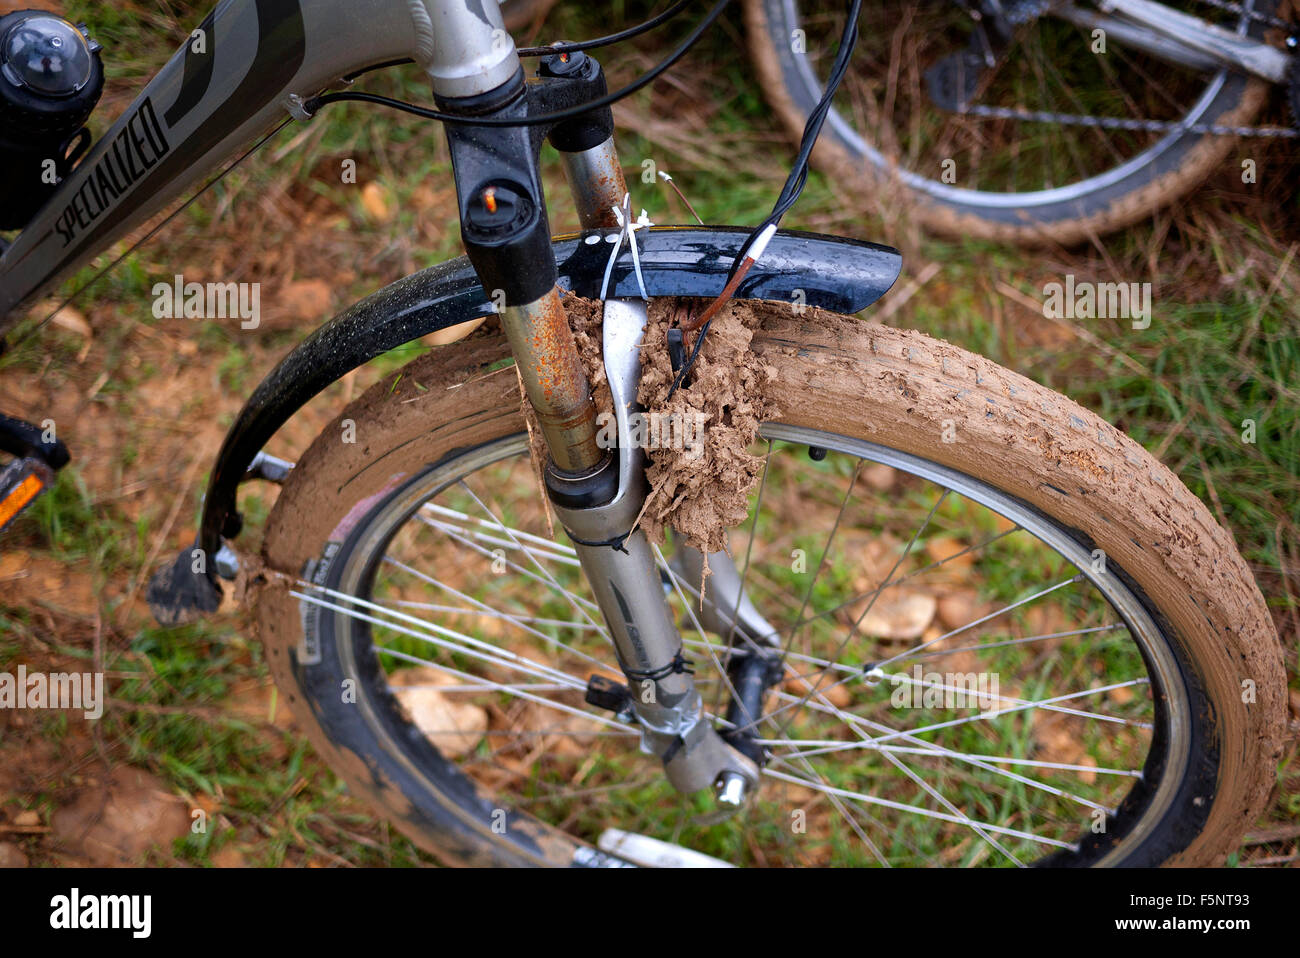 Schlamm verstopft Fahrrad-Rad. Stockfoto